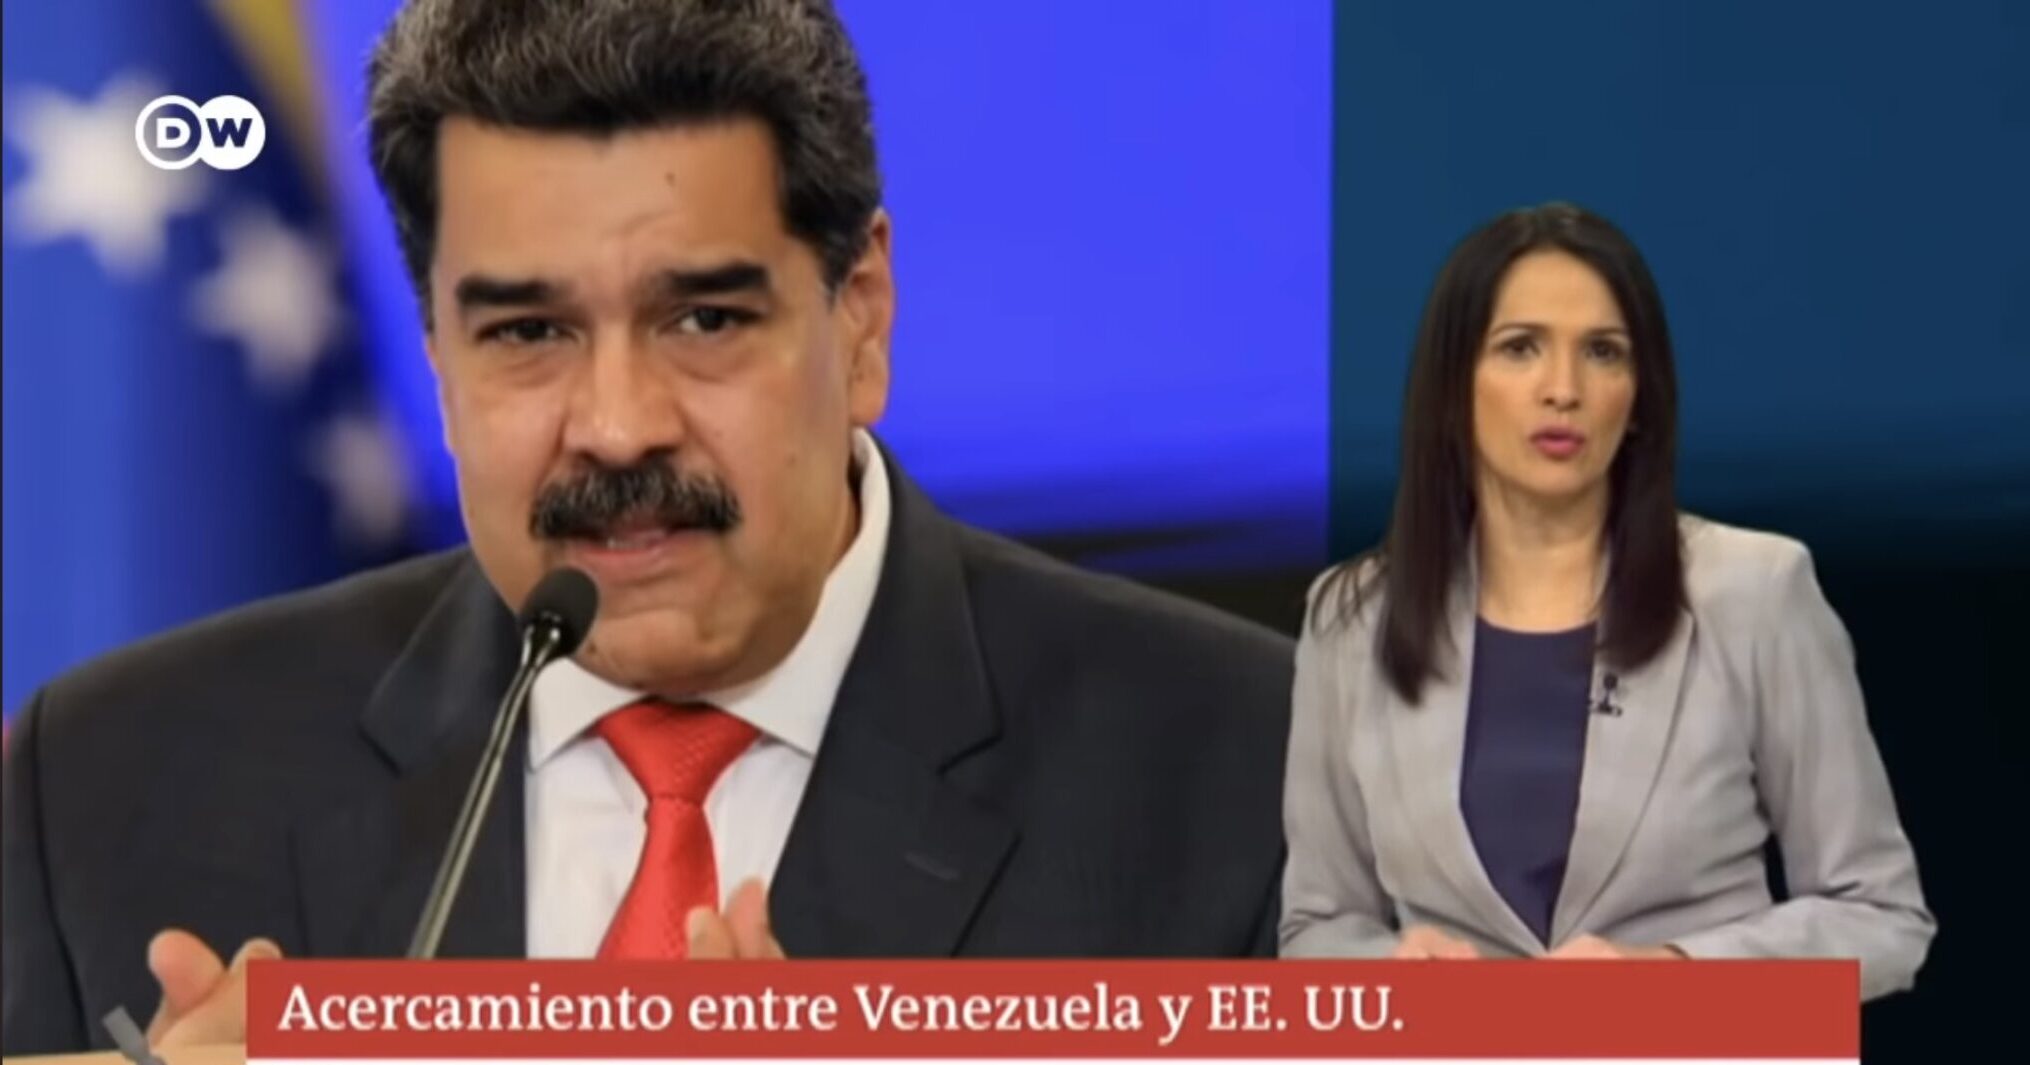 Estados Unidos indulta al petróleo venezolano ¿Por qué ahora?